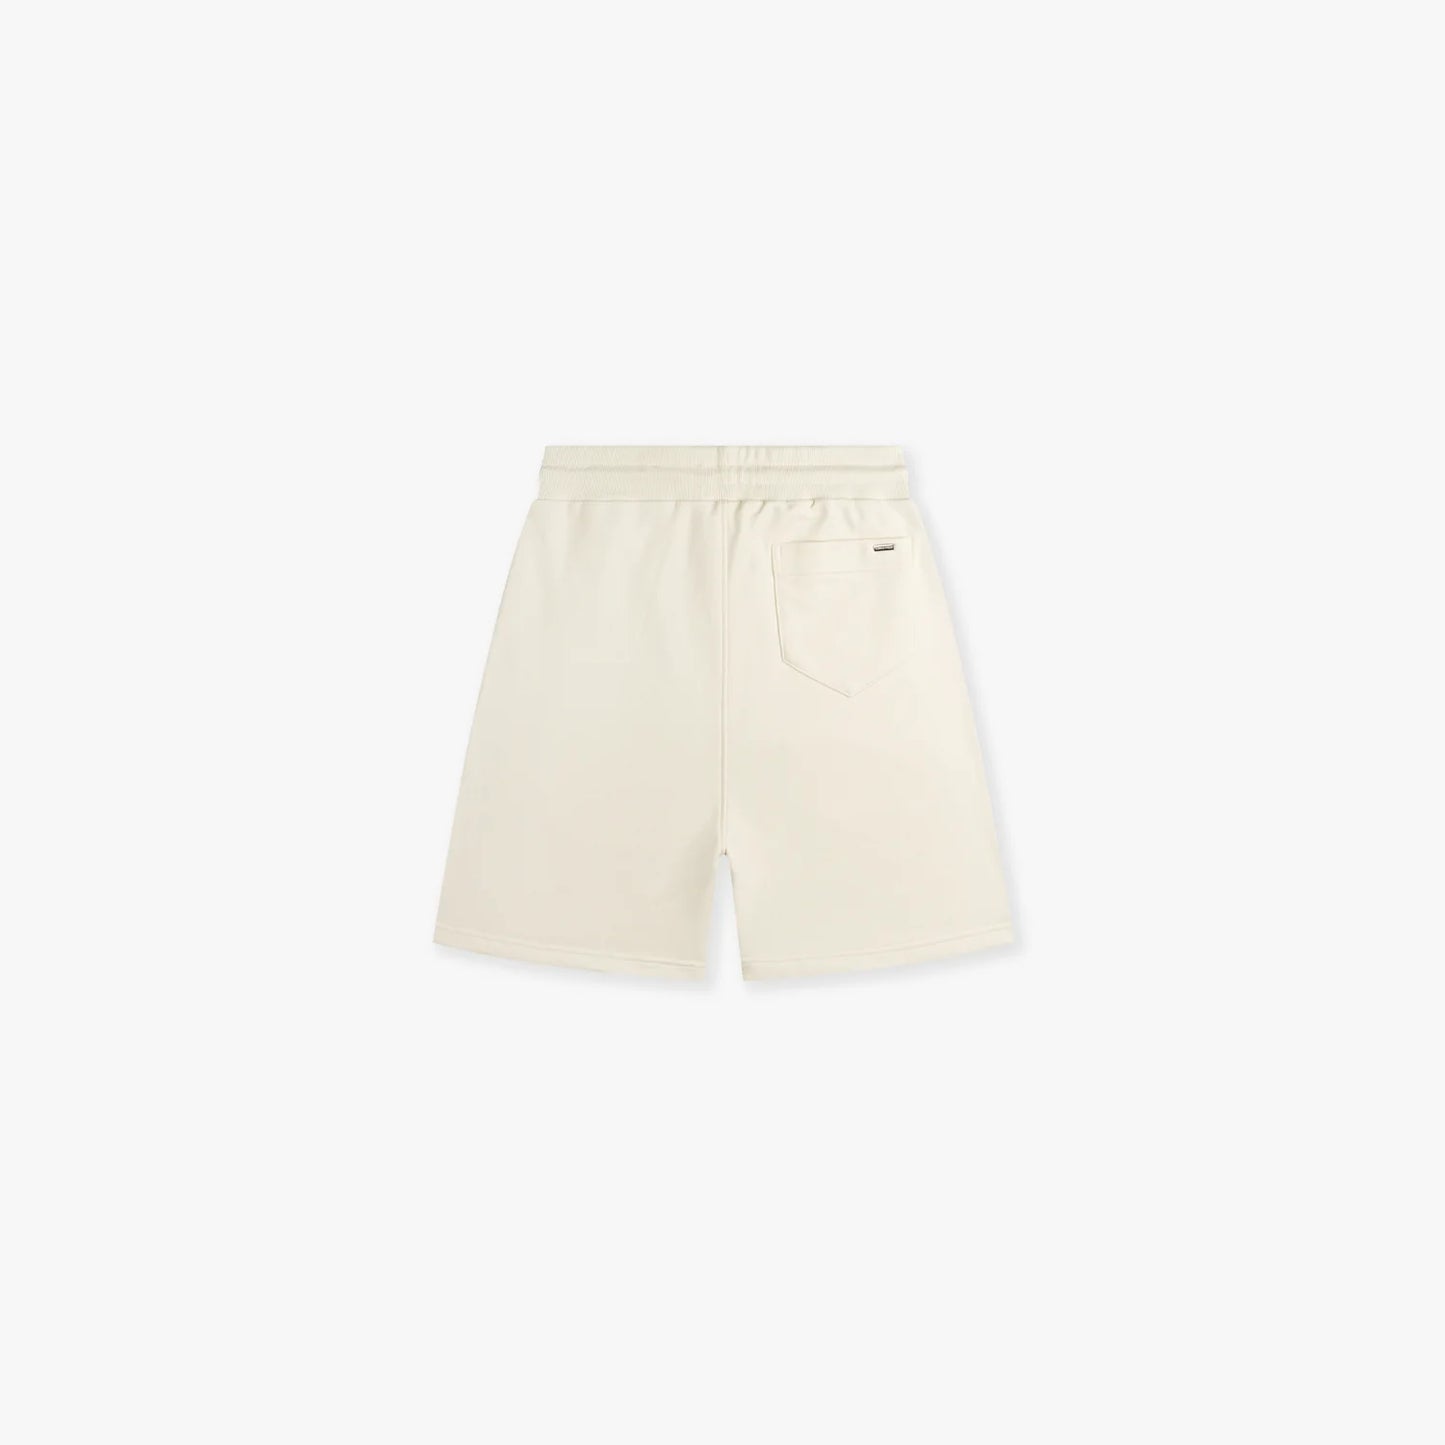 Croyez atelier shorts - beige/white